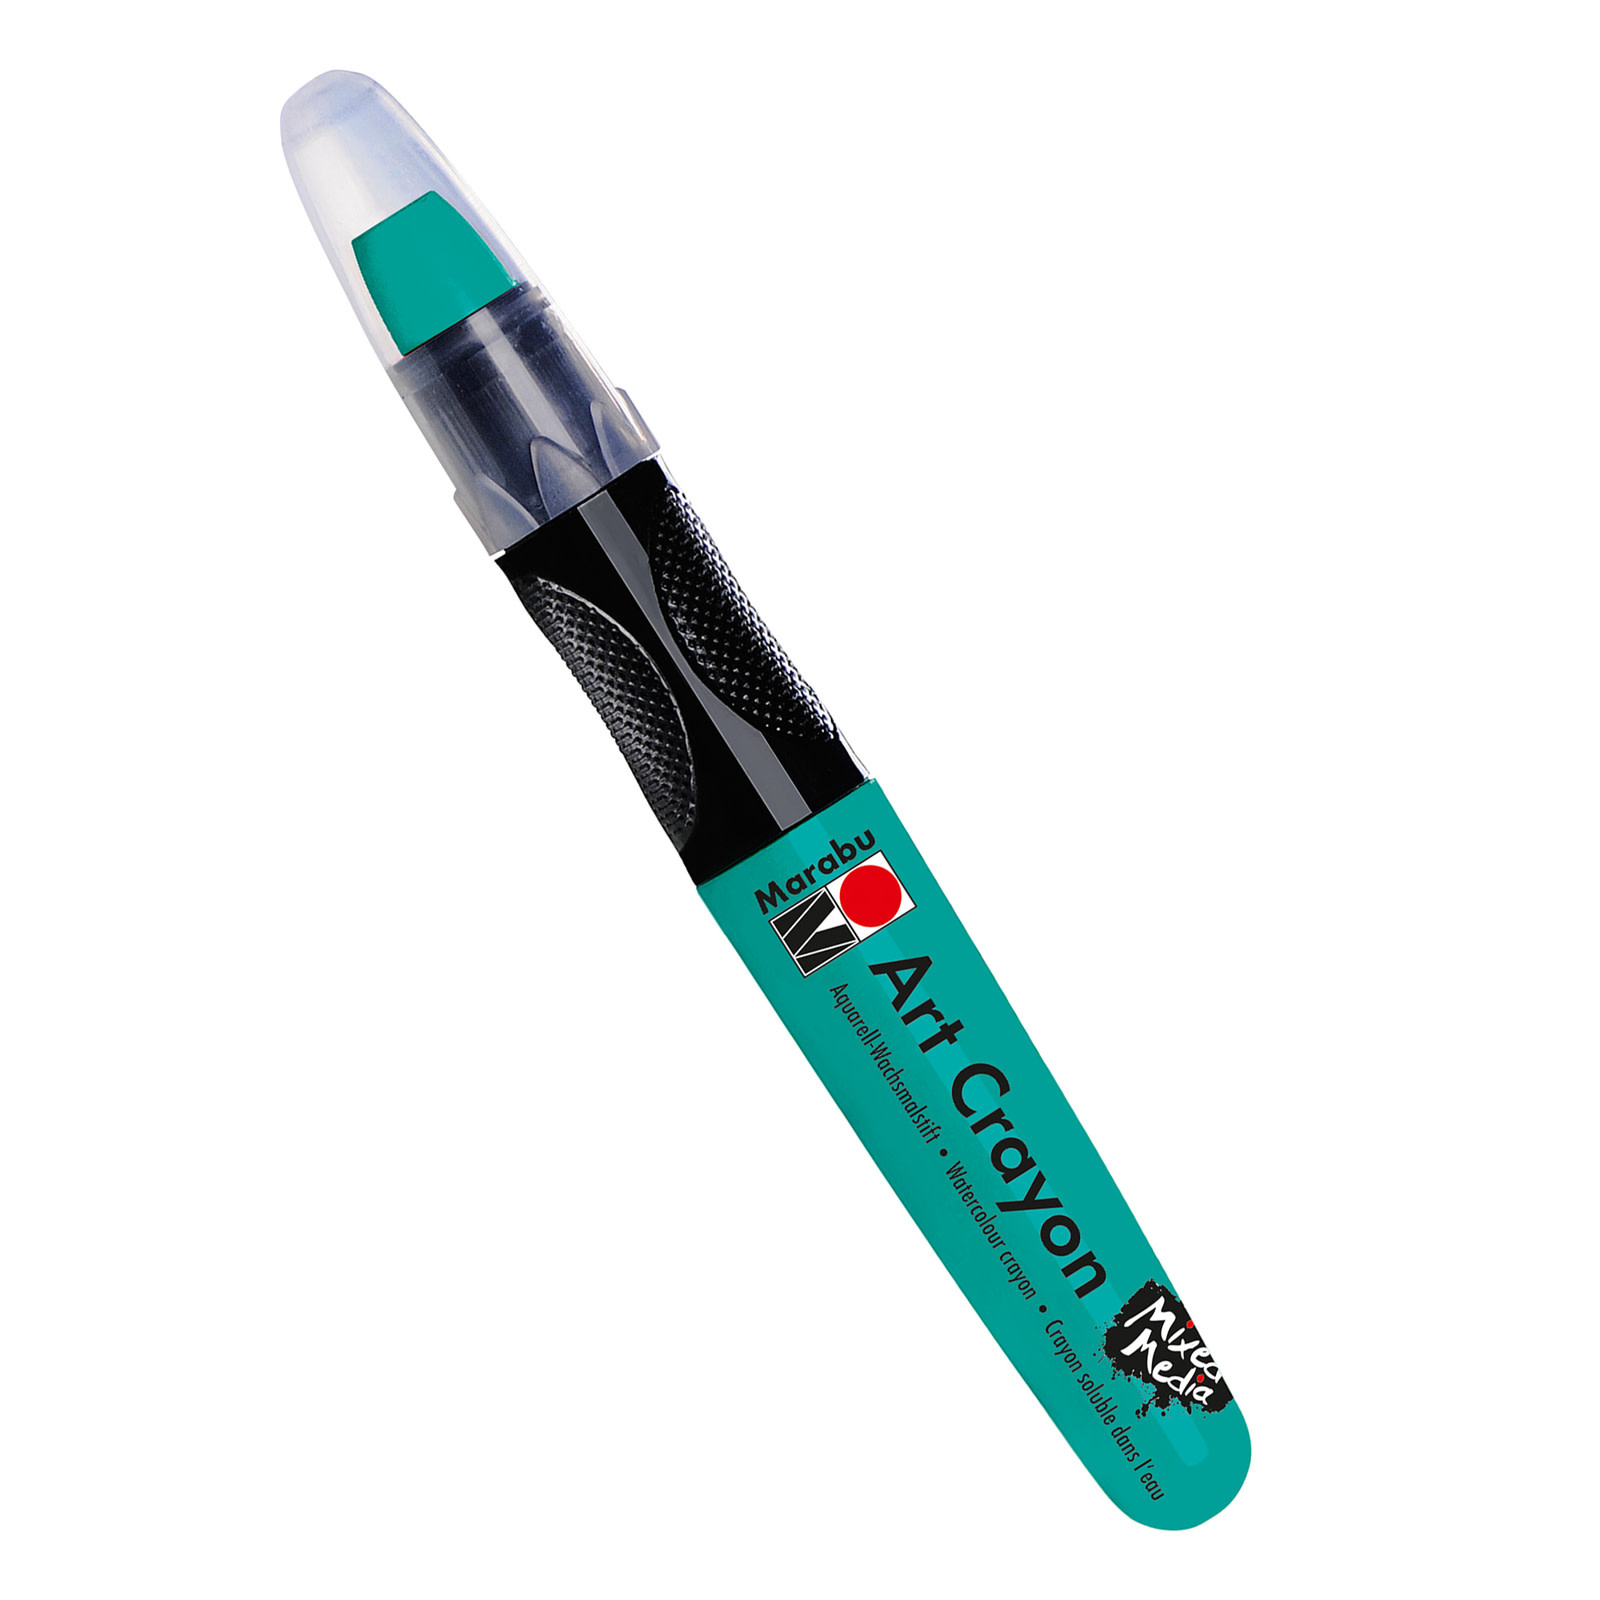 Marabu Art Crayons, Aqua Green - Water Soluble Wax